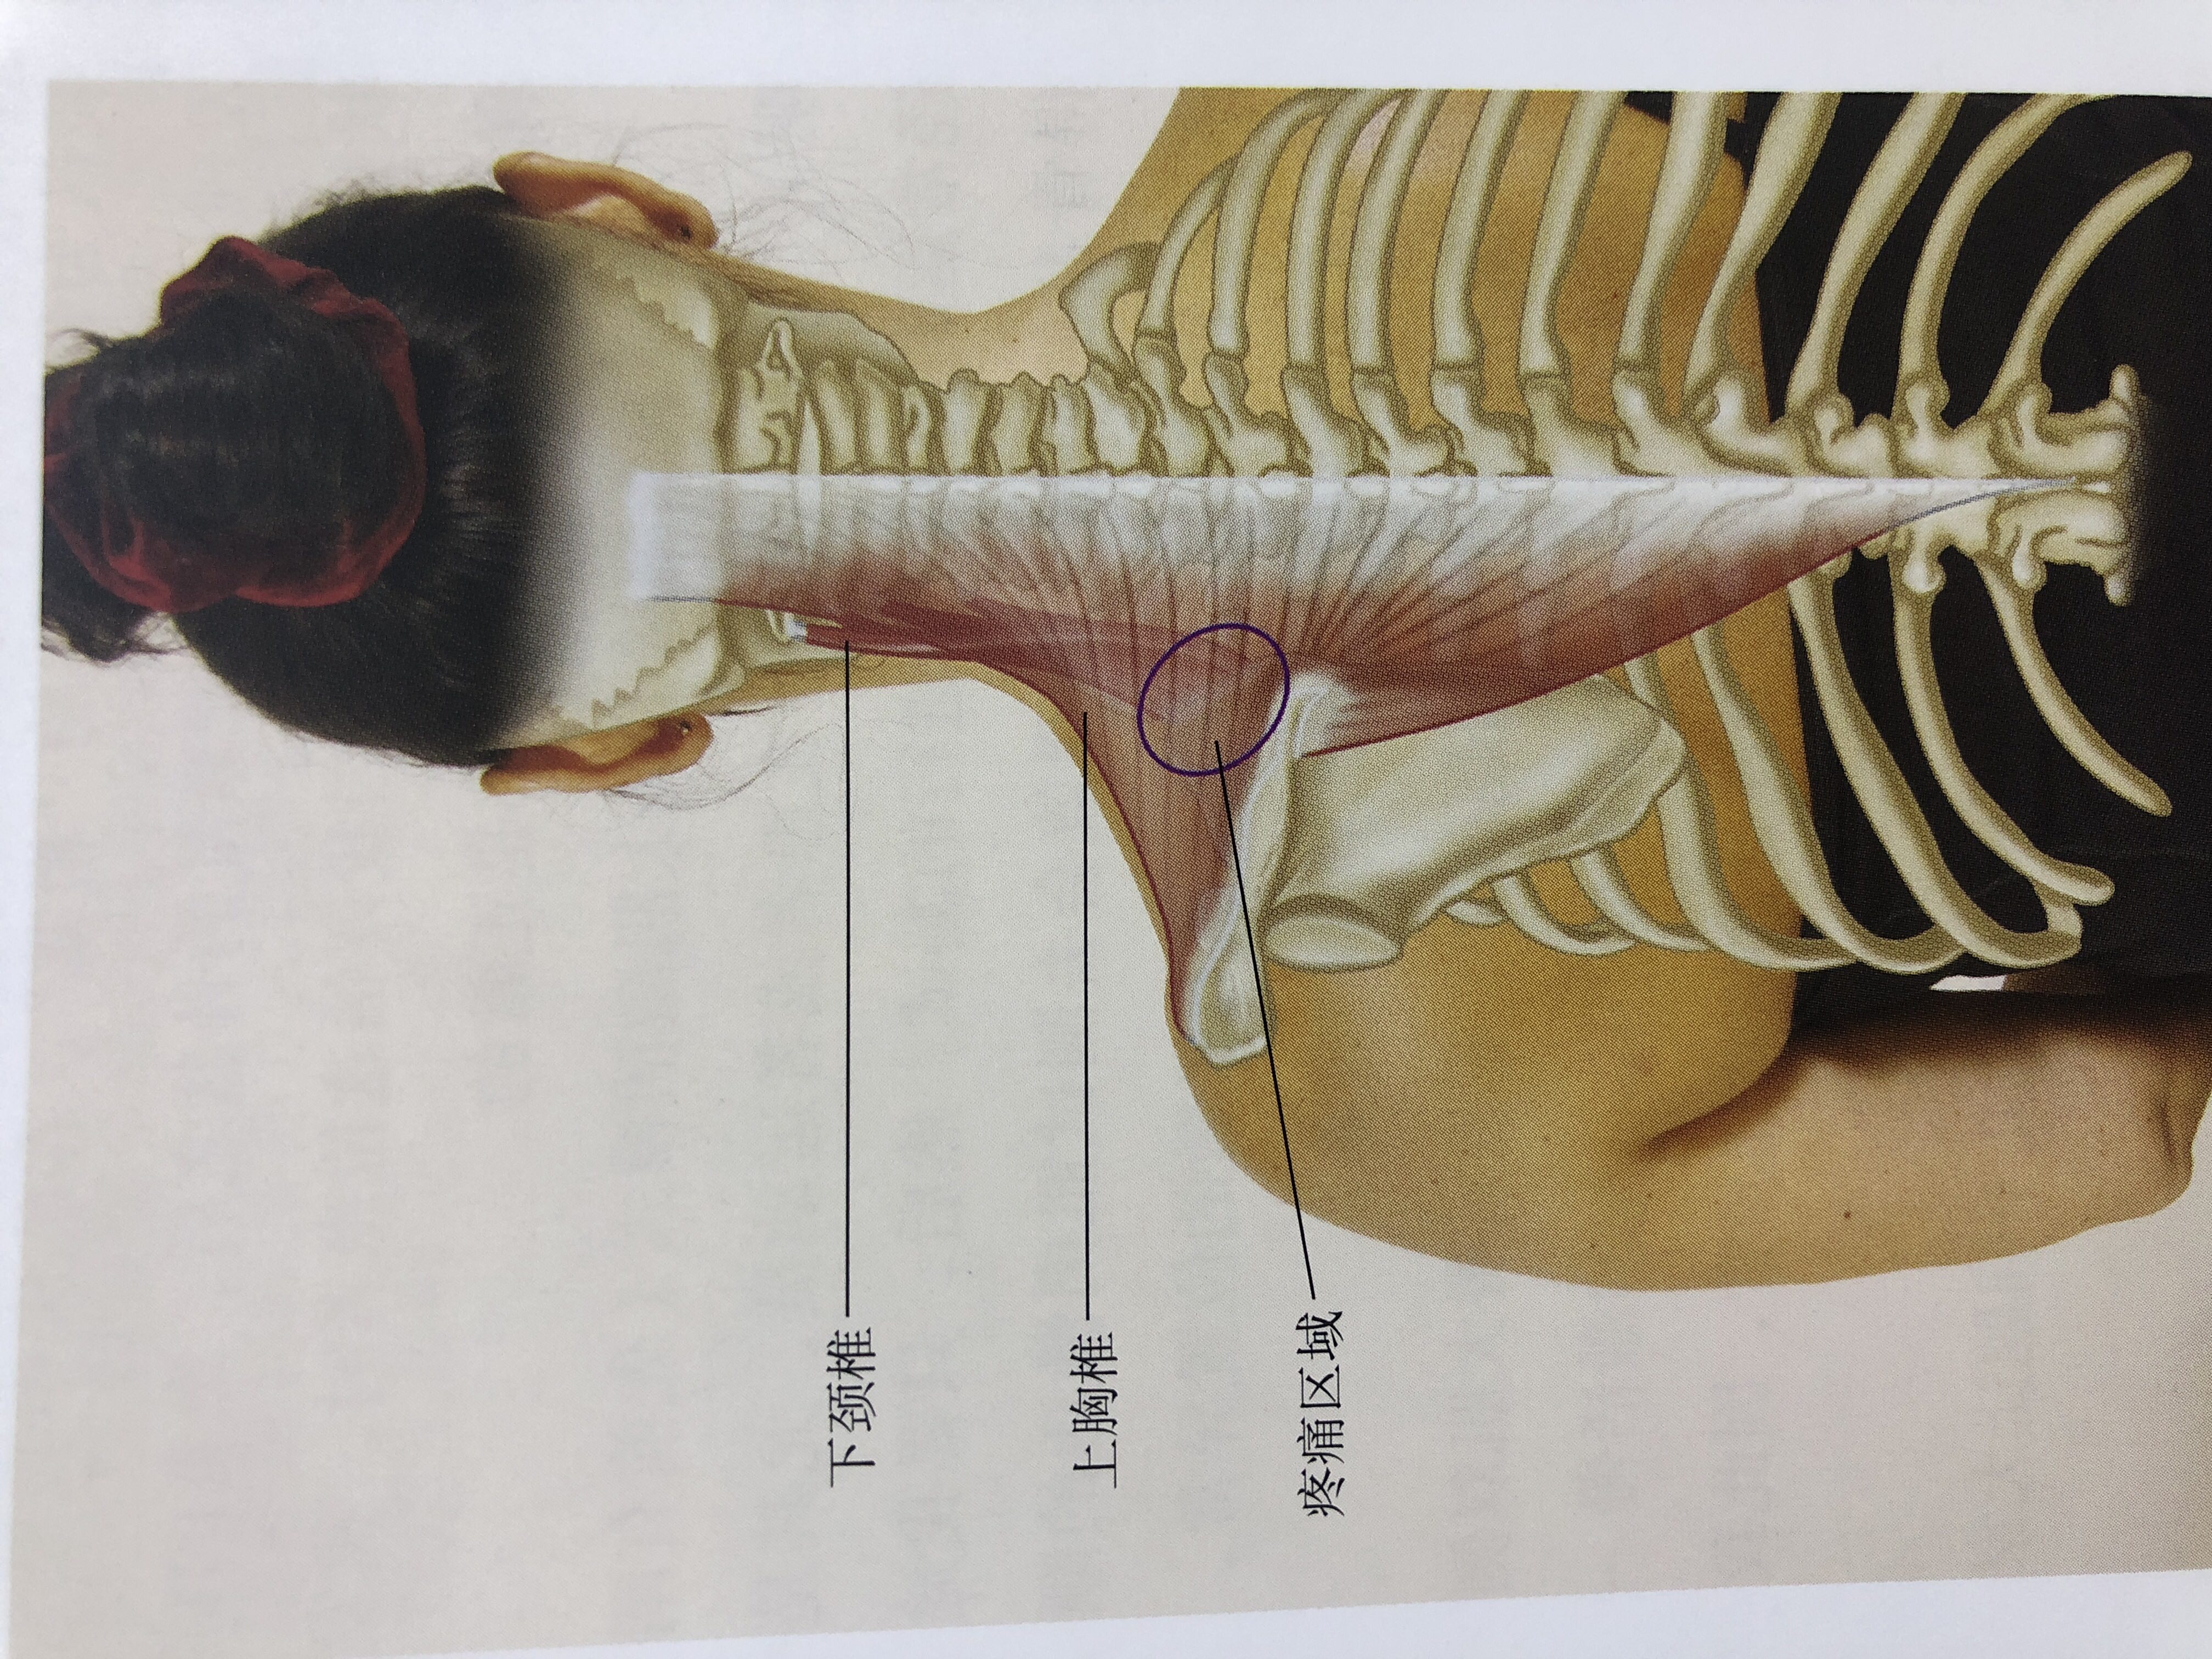 肩胛骨图片位置示意图图片